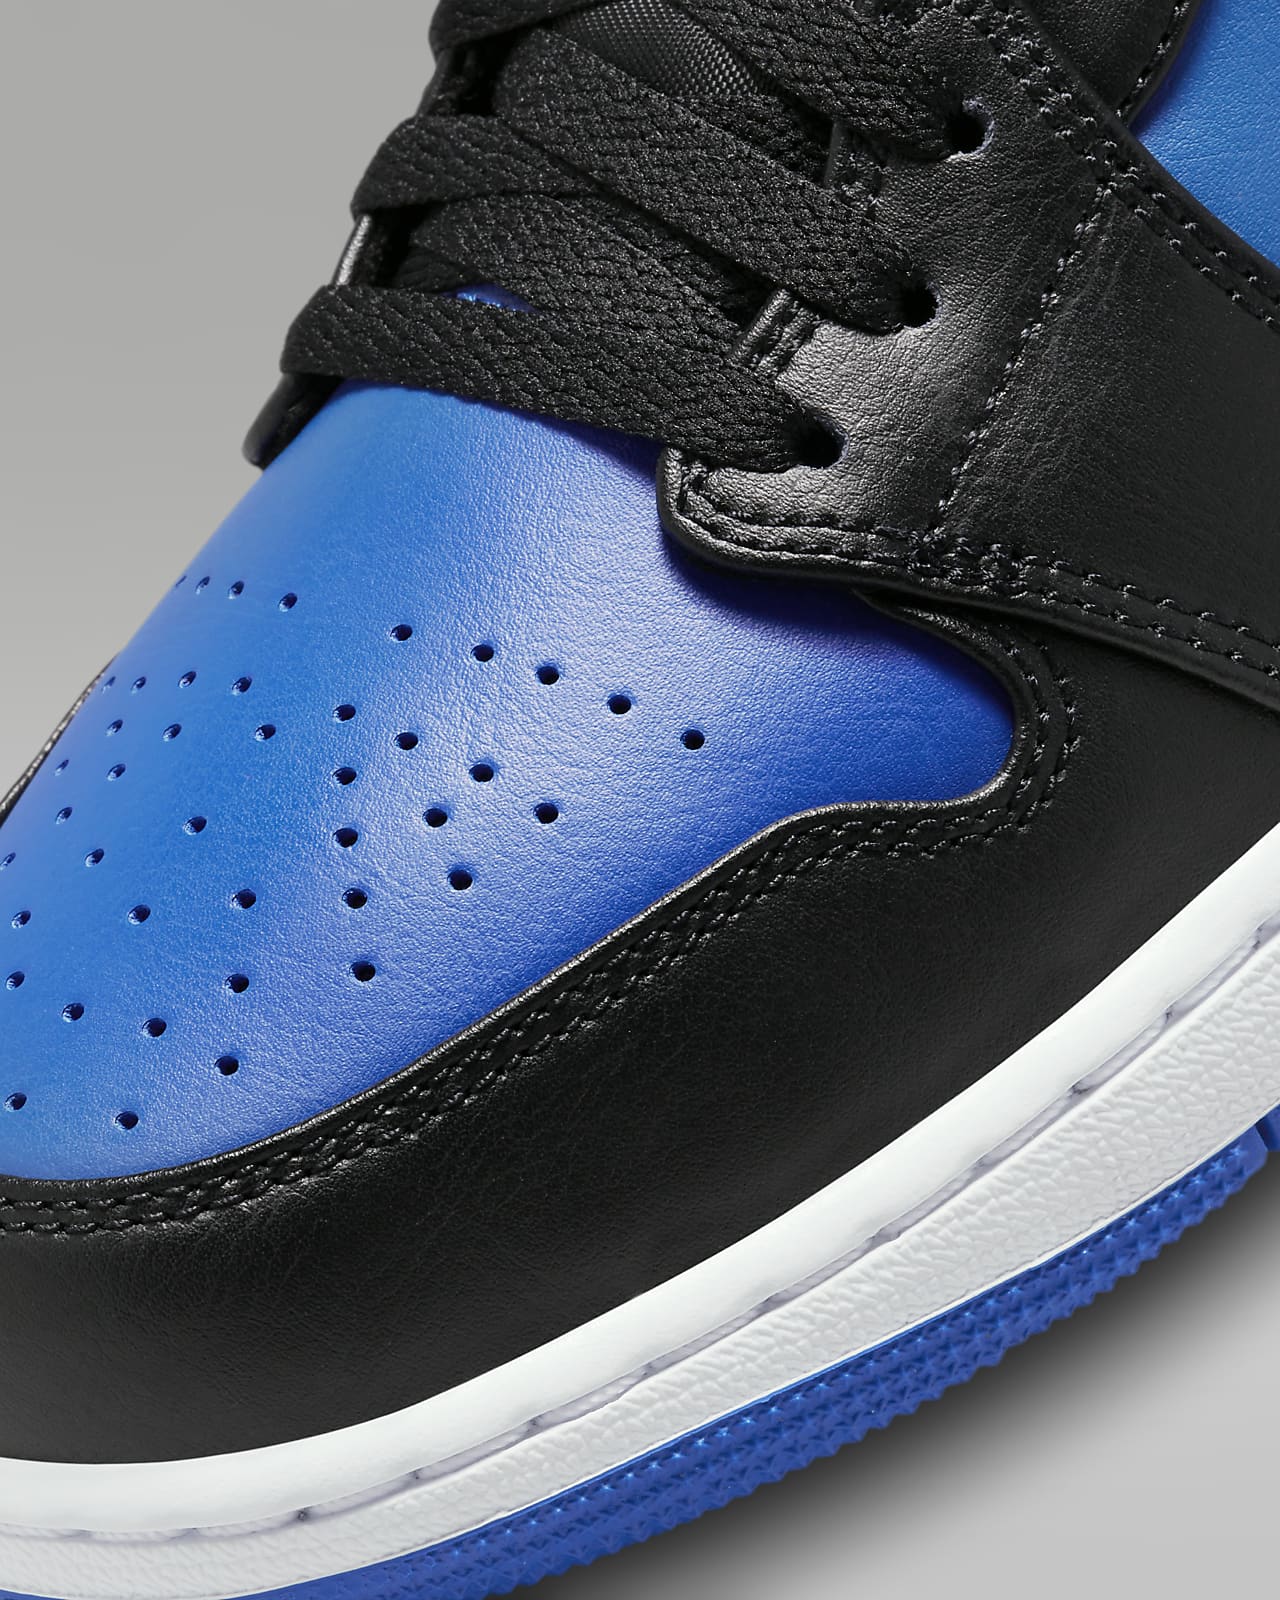 Men's Jordan Shoes. Nike IN